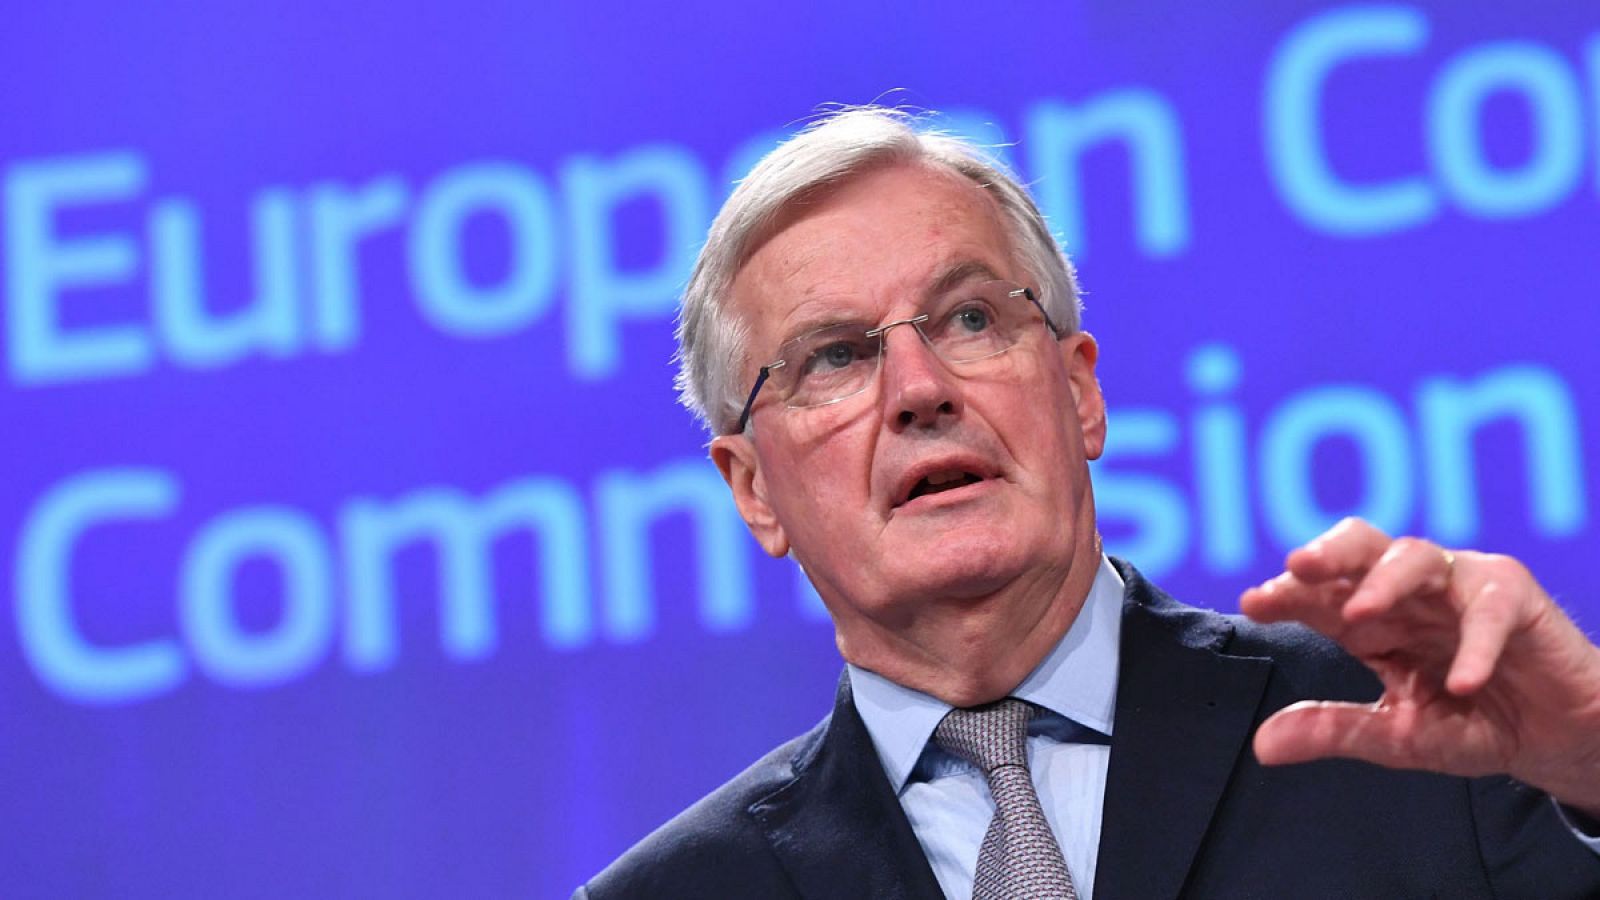 El jefe negociador de la Comisión Europea, Michel Barnier, explica su propuesta para negociar con Londres la transición tras el Brexit y el futuro acuerdo comercial